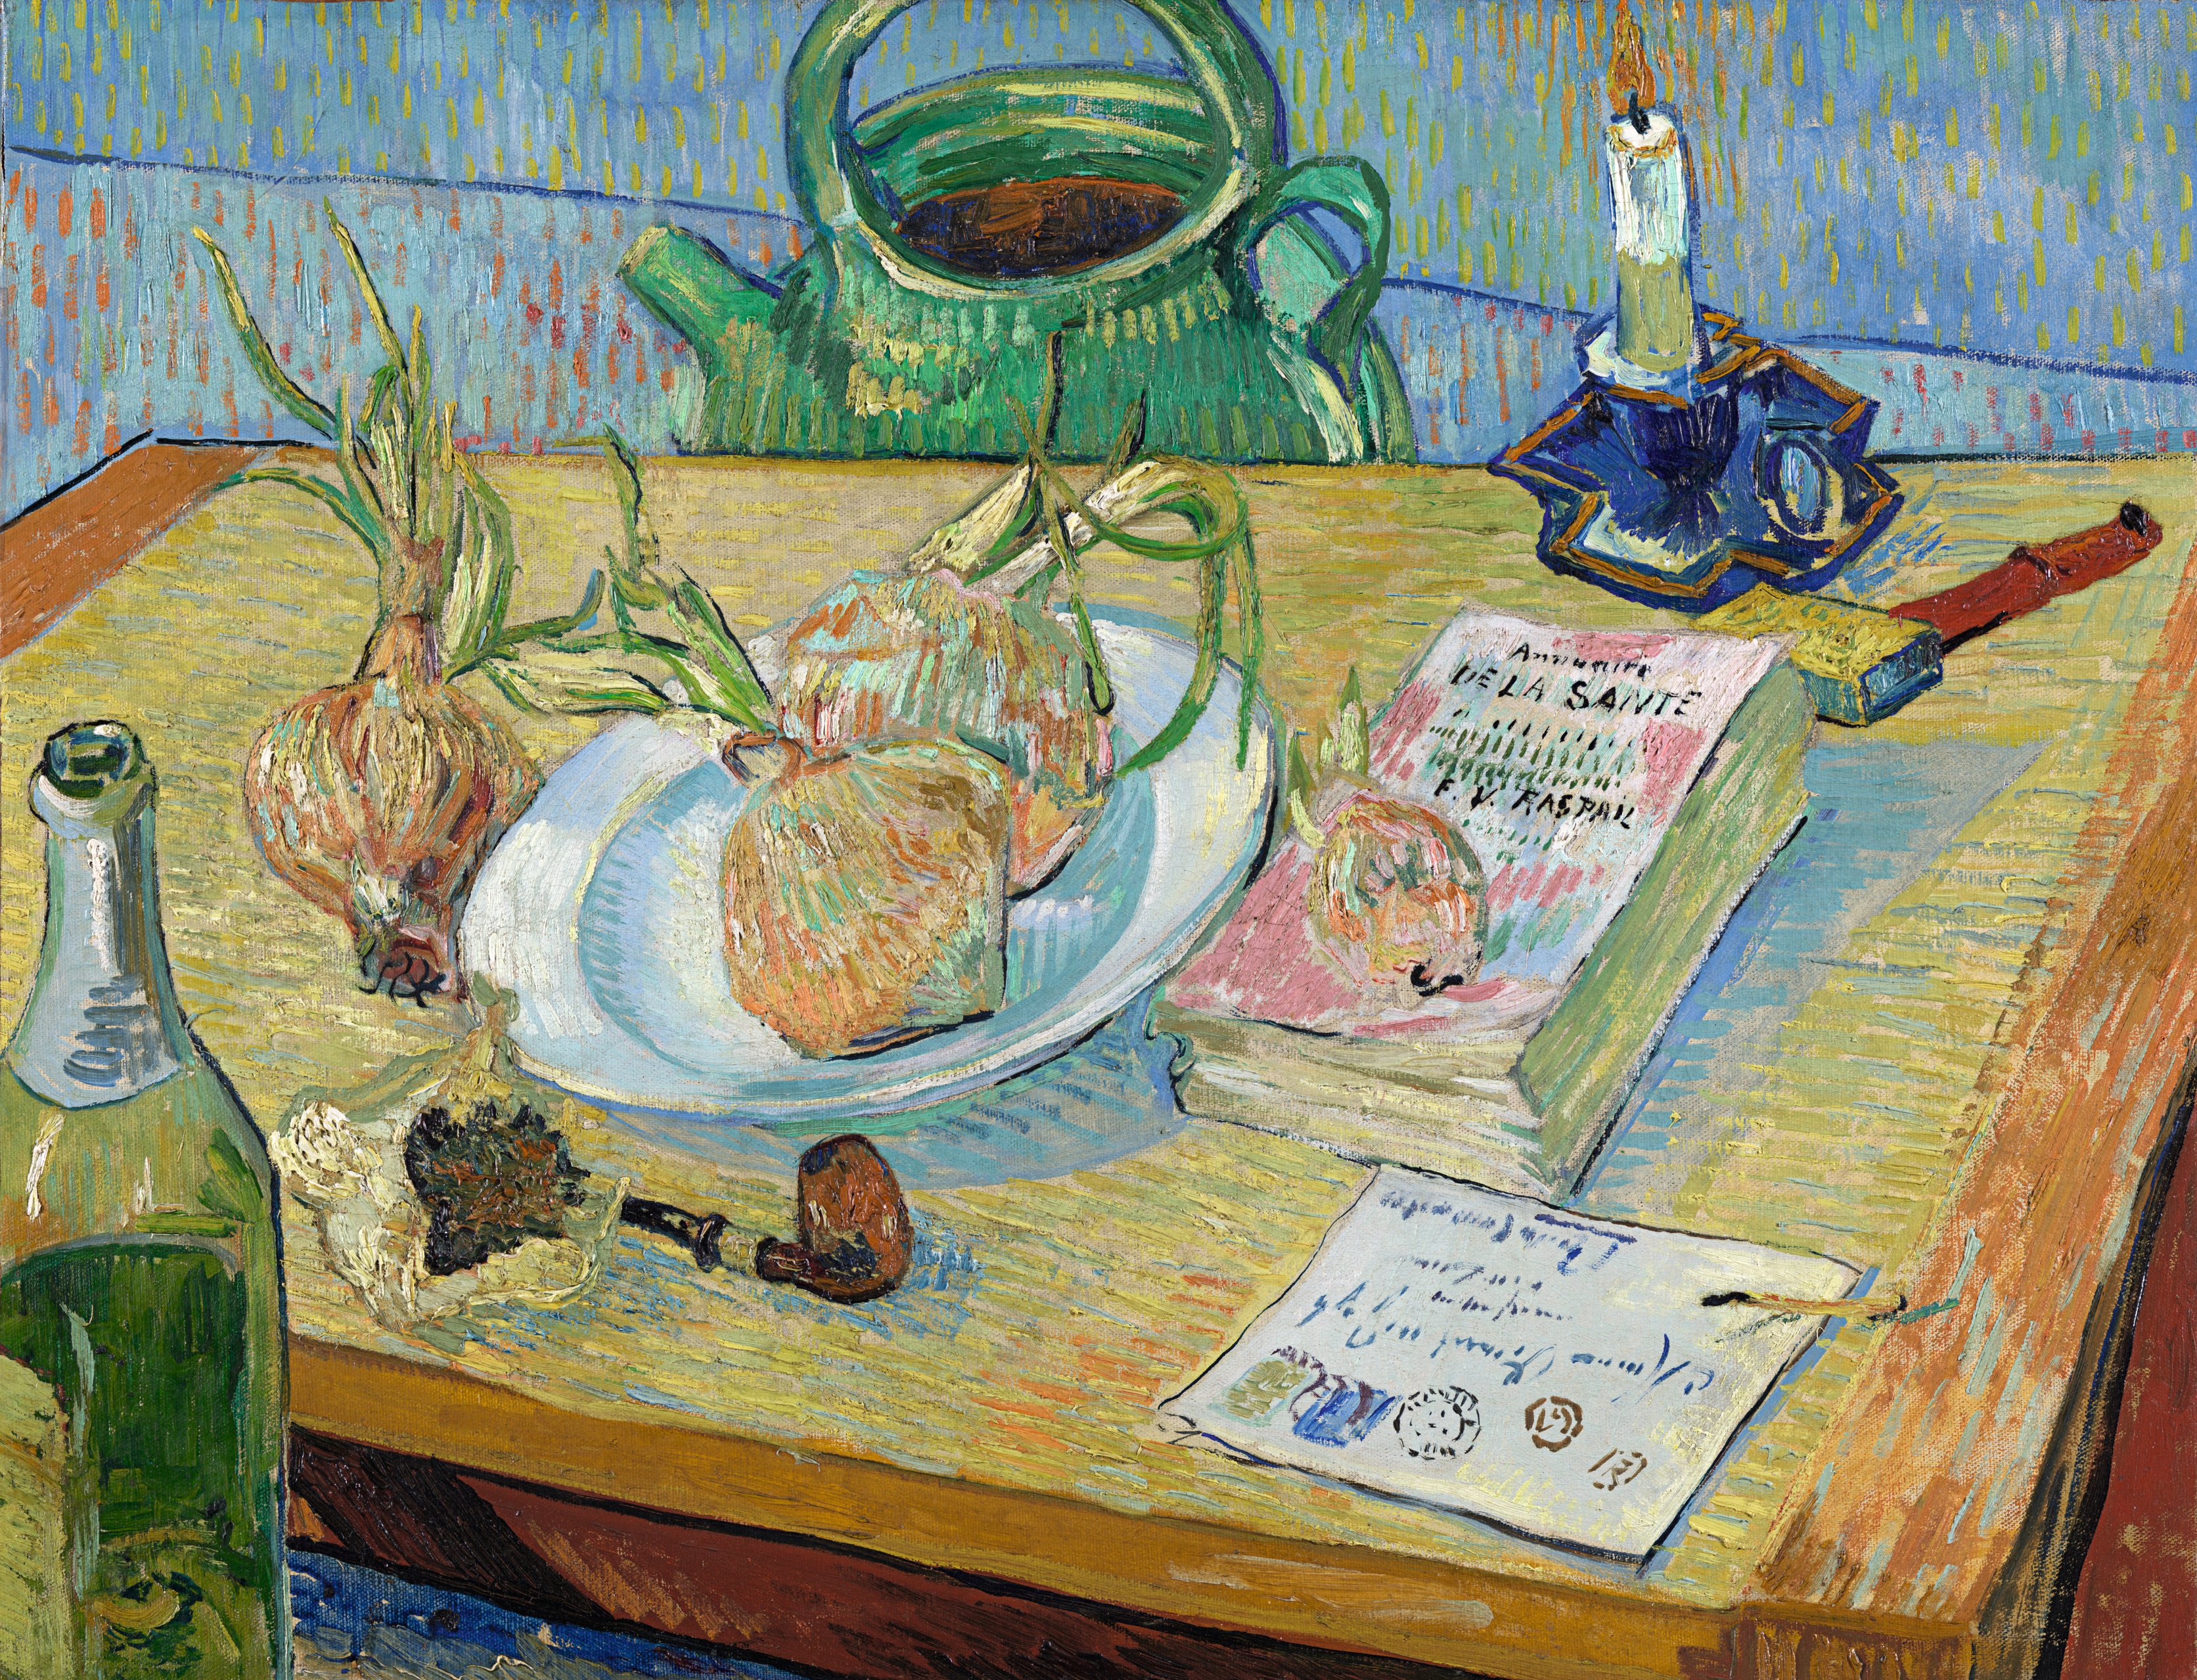 Vincent van Gogh (1853-1890), Stillleben mit einem Teller Zwiebeln, 1889, Öl auf Leinwand, 49,6 x 64,4 cm, Kröller-Müller Museum, Otterlo, Niederlande